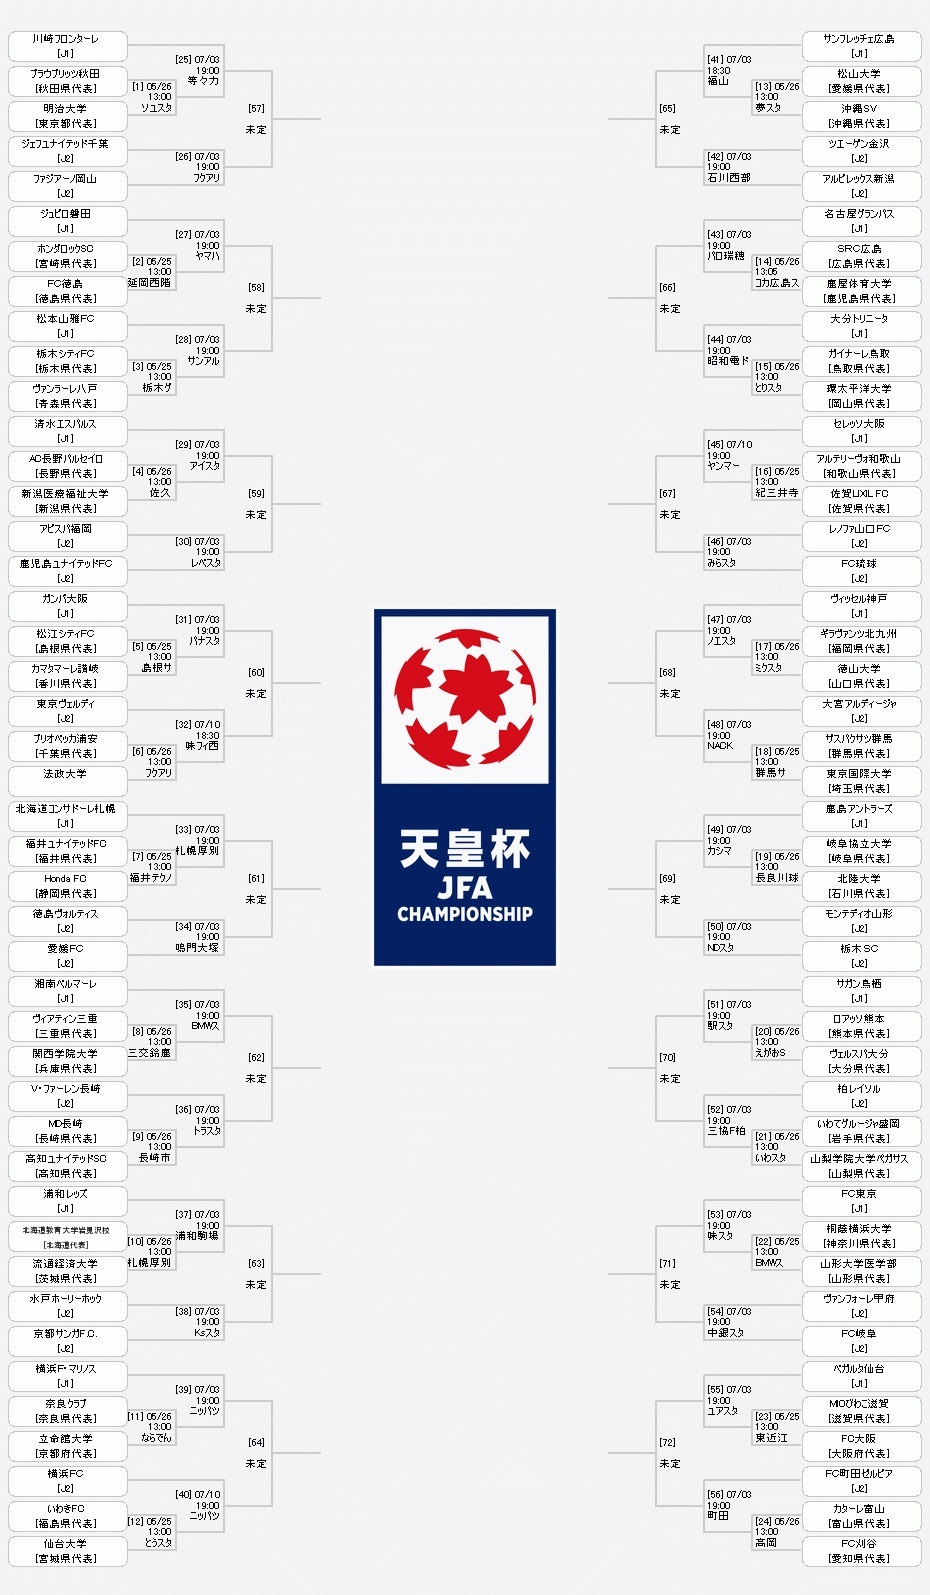 『天皇杯 JFA 第99回全日本サッカー選手権大会』の組み合わせ表